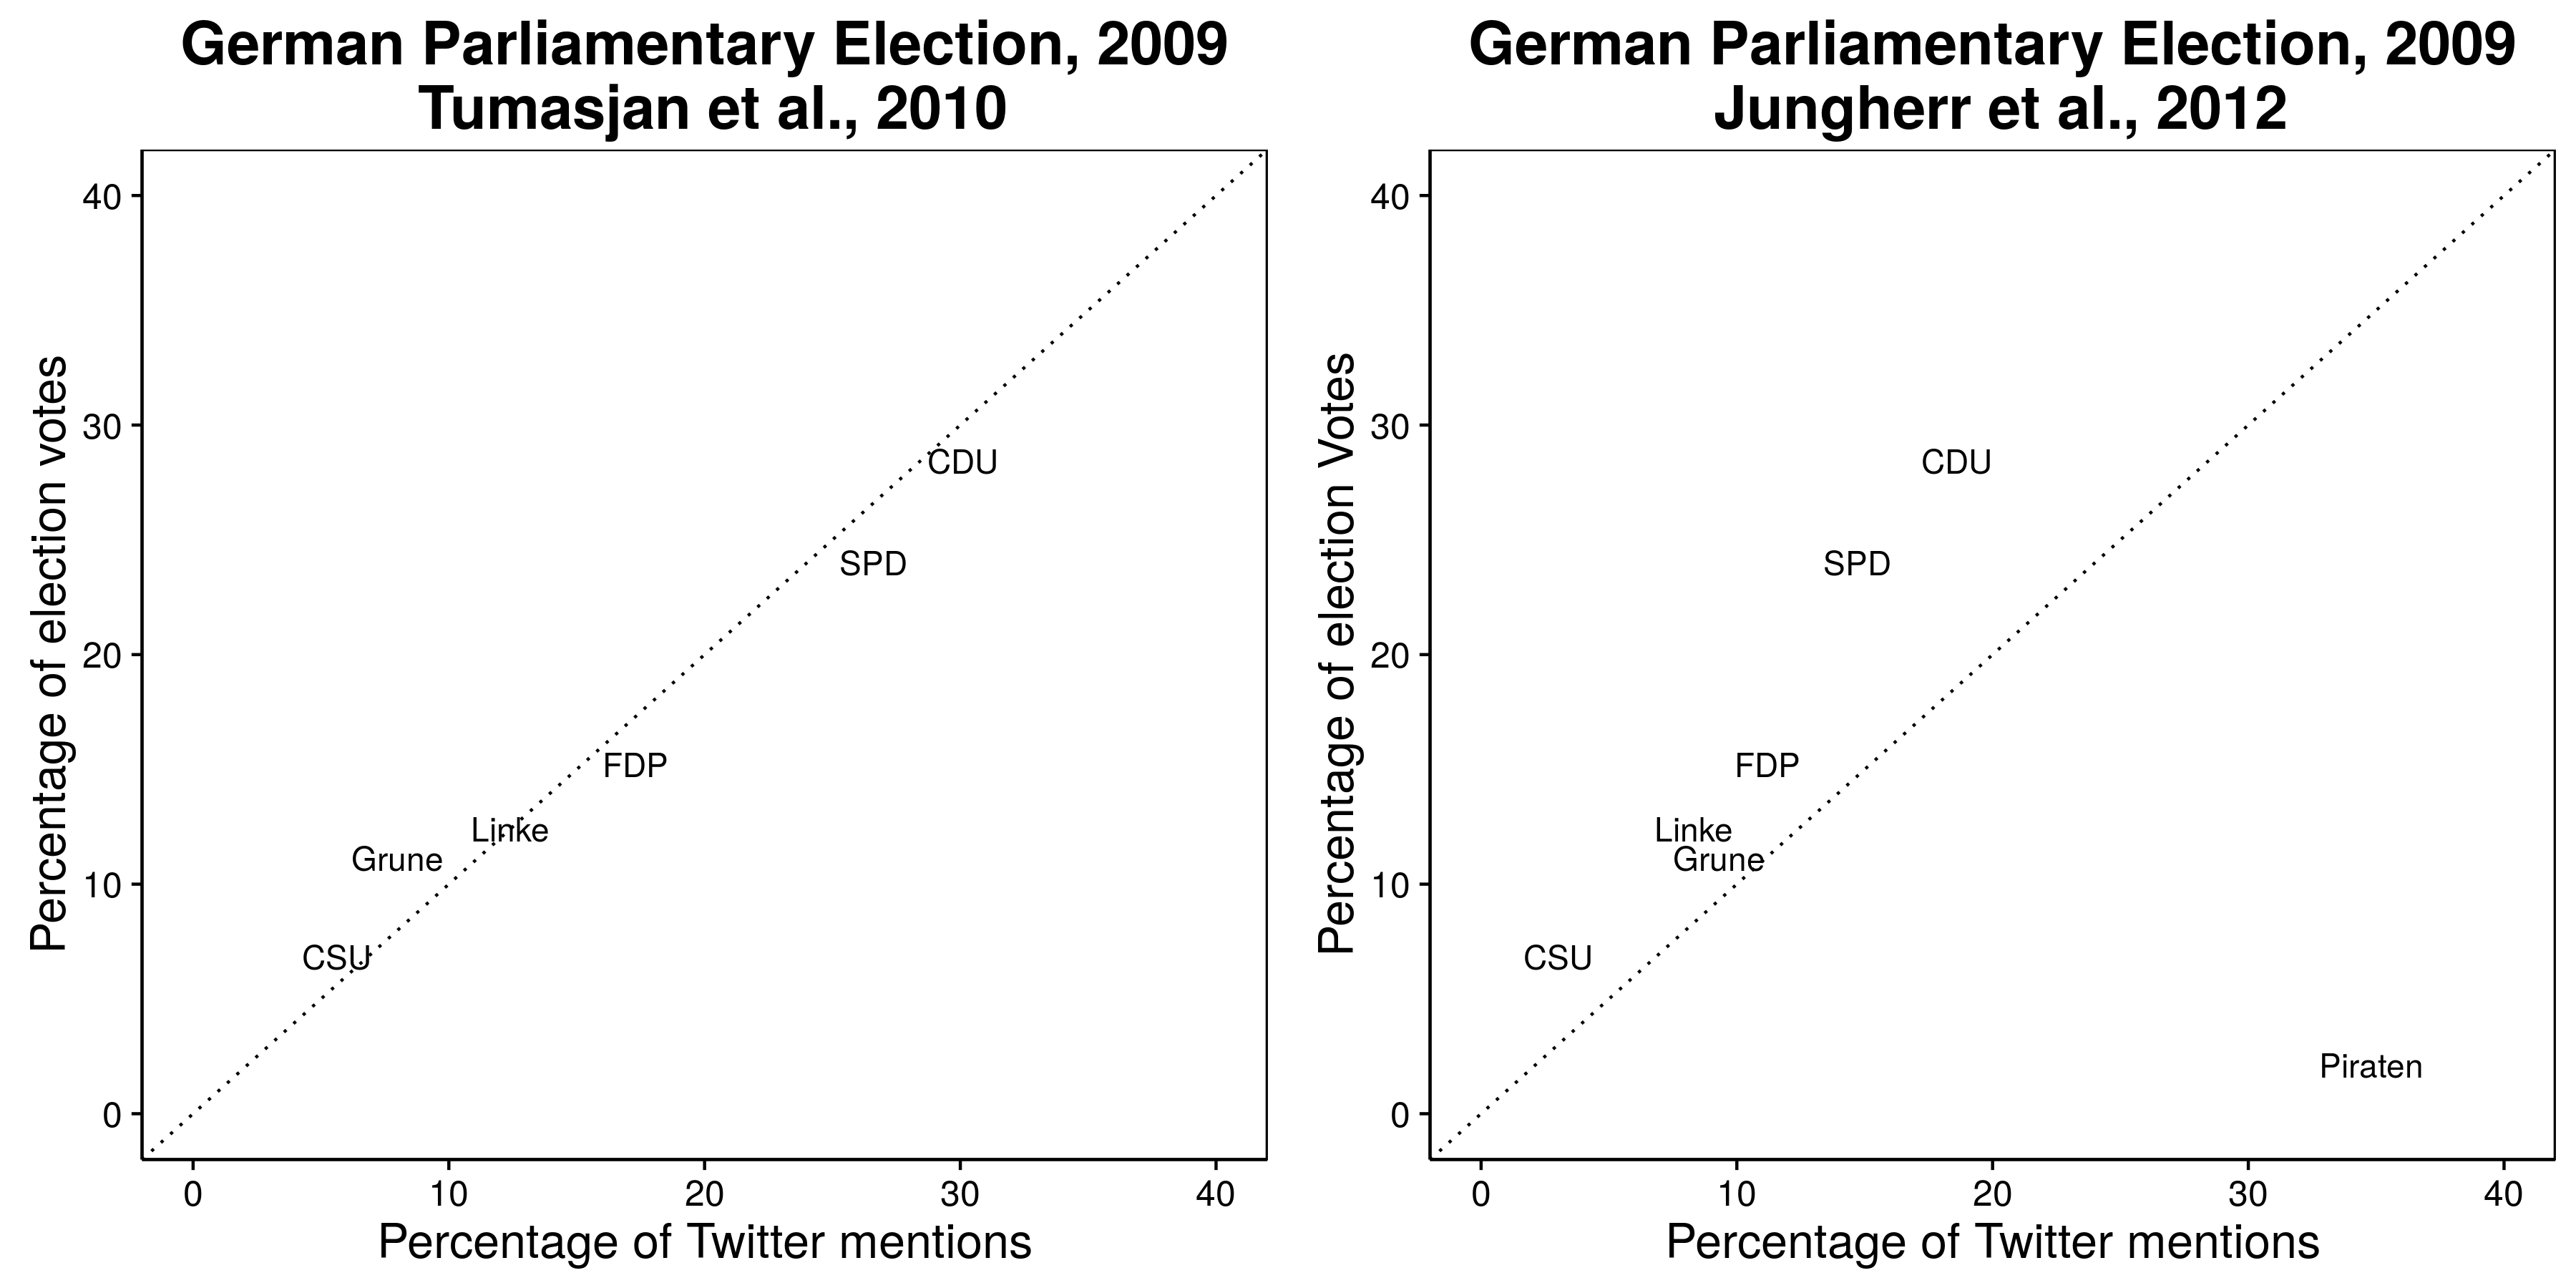 2.3 paveikslas. Pastebėta, kad "Twitter" prognozuoja 2009 m. Vokietijos rinkimų rezultatus (Tumasjan ir kt., 2010), tačiau į šią partiją neįtraukta daugiausia minėtųjų partijų: "Piratų partija" (Jungherr, Jürgens ir Schoen 2012). Žr. Tumasjaną ir kt. (2012 m.) Argumentu dėl piratinės partijos pašalinimo. Adaptuotas iš Tumasjan ir kt. (2010 m.), 4 lentelė ir Jungherr, Jürgens ir Schoen (2012 m.), 2 lentelė.